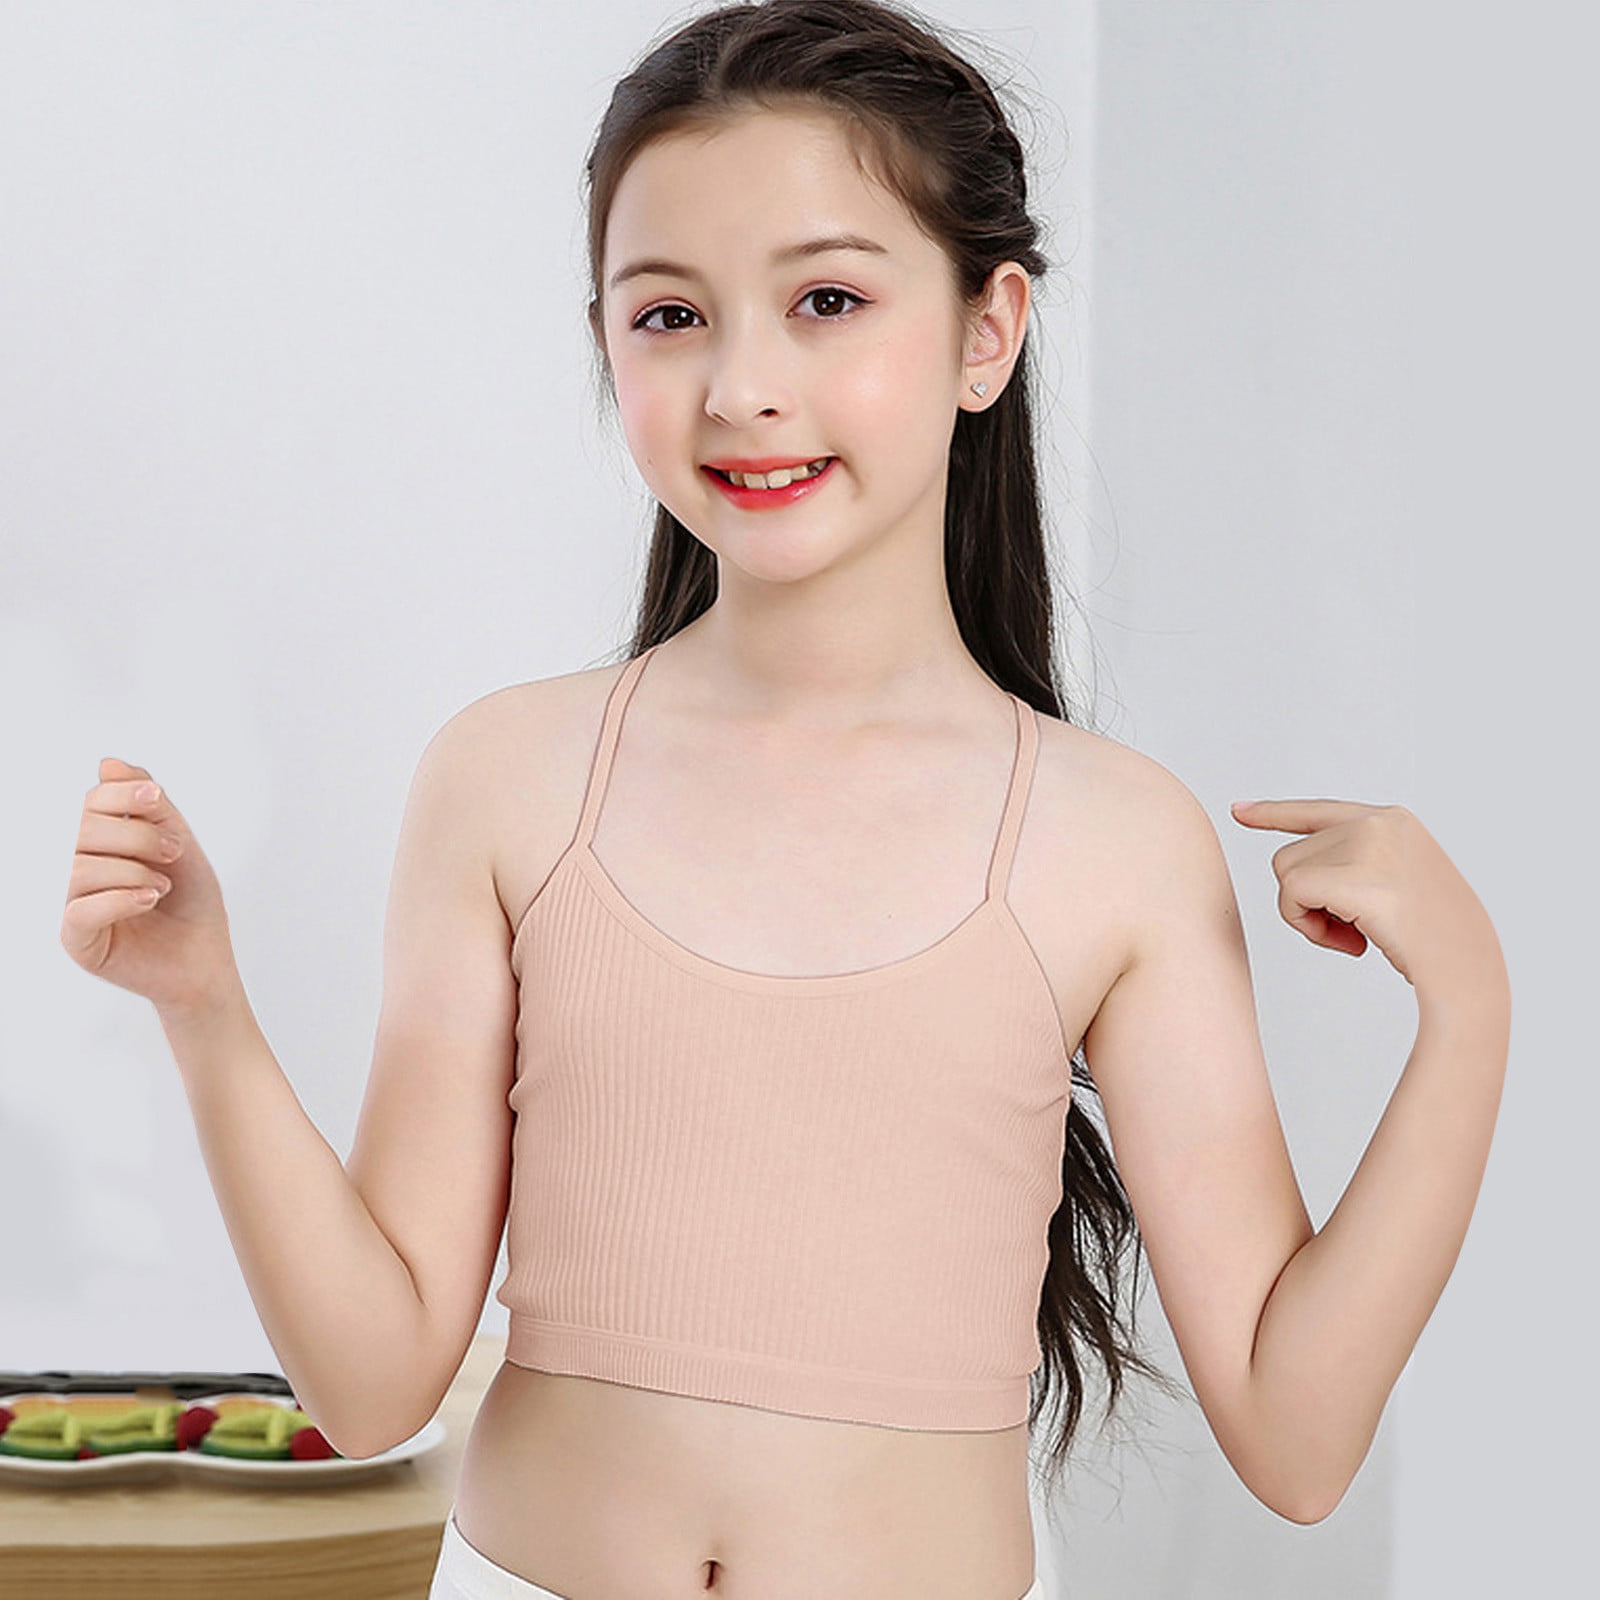 10-15 Years Puberty Kids Girls Underwear Bra Vest Children Underclothes Sport Undies Clothes erthome Baby Girl Clothing